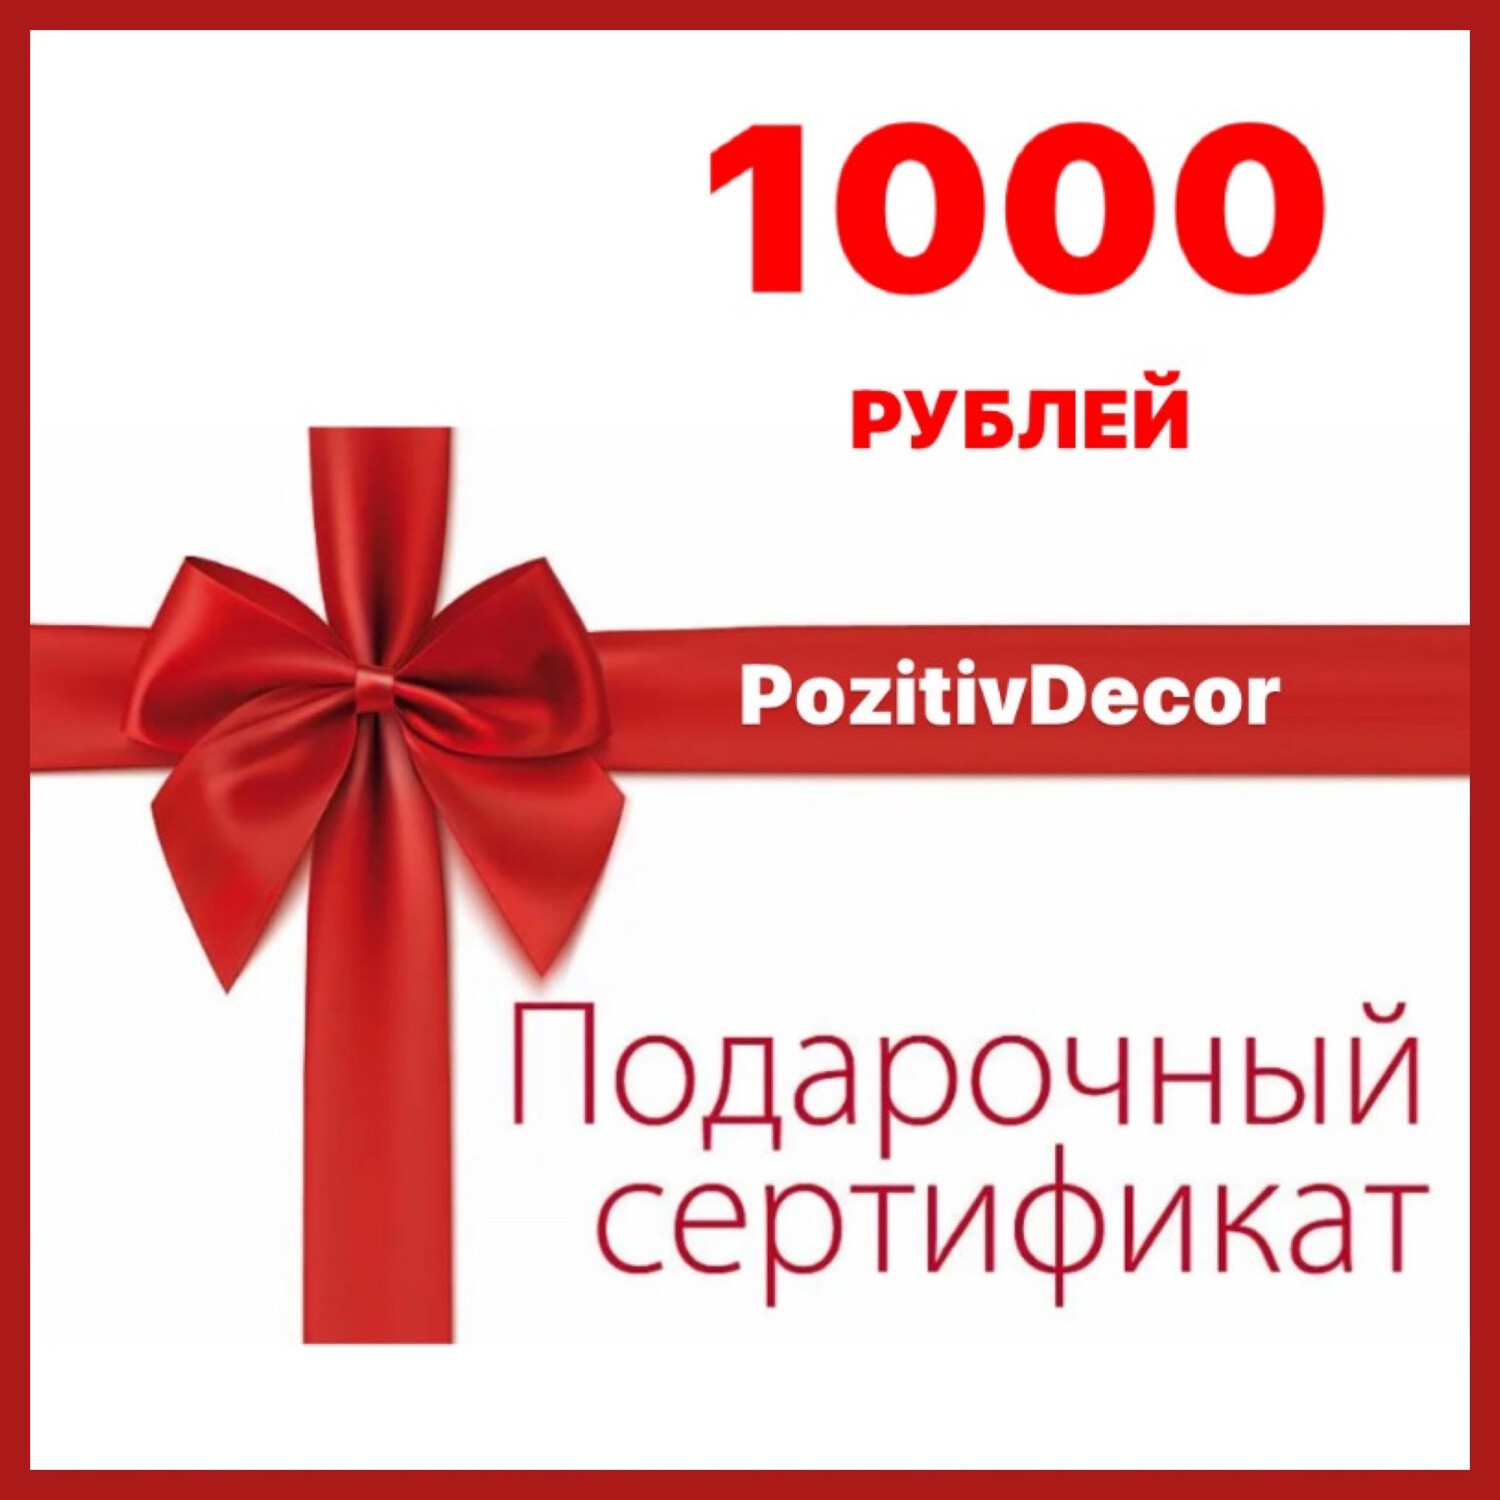 ПОДАРОЧНЫЙ СЕРТИФИКАТ 1000 рублей